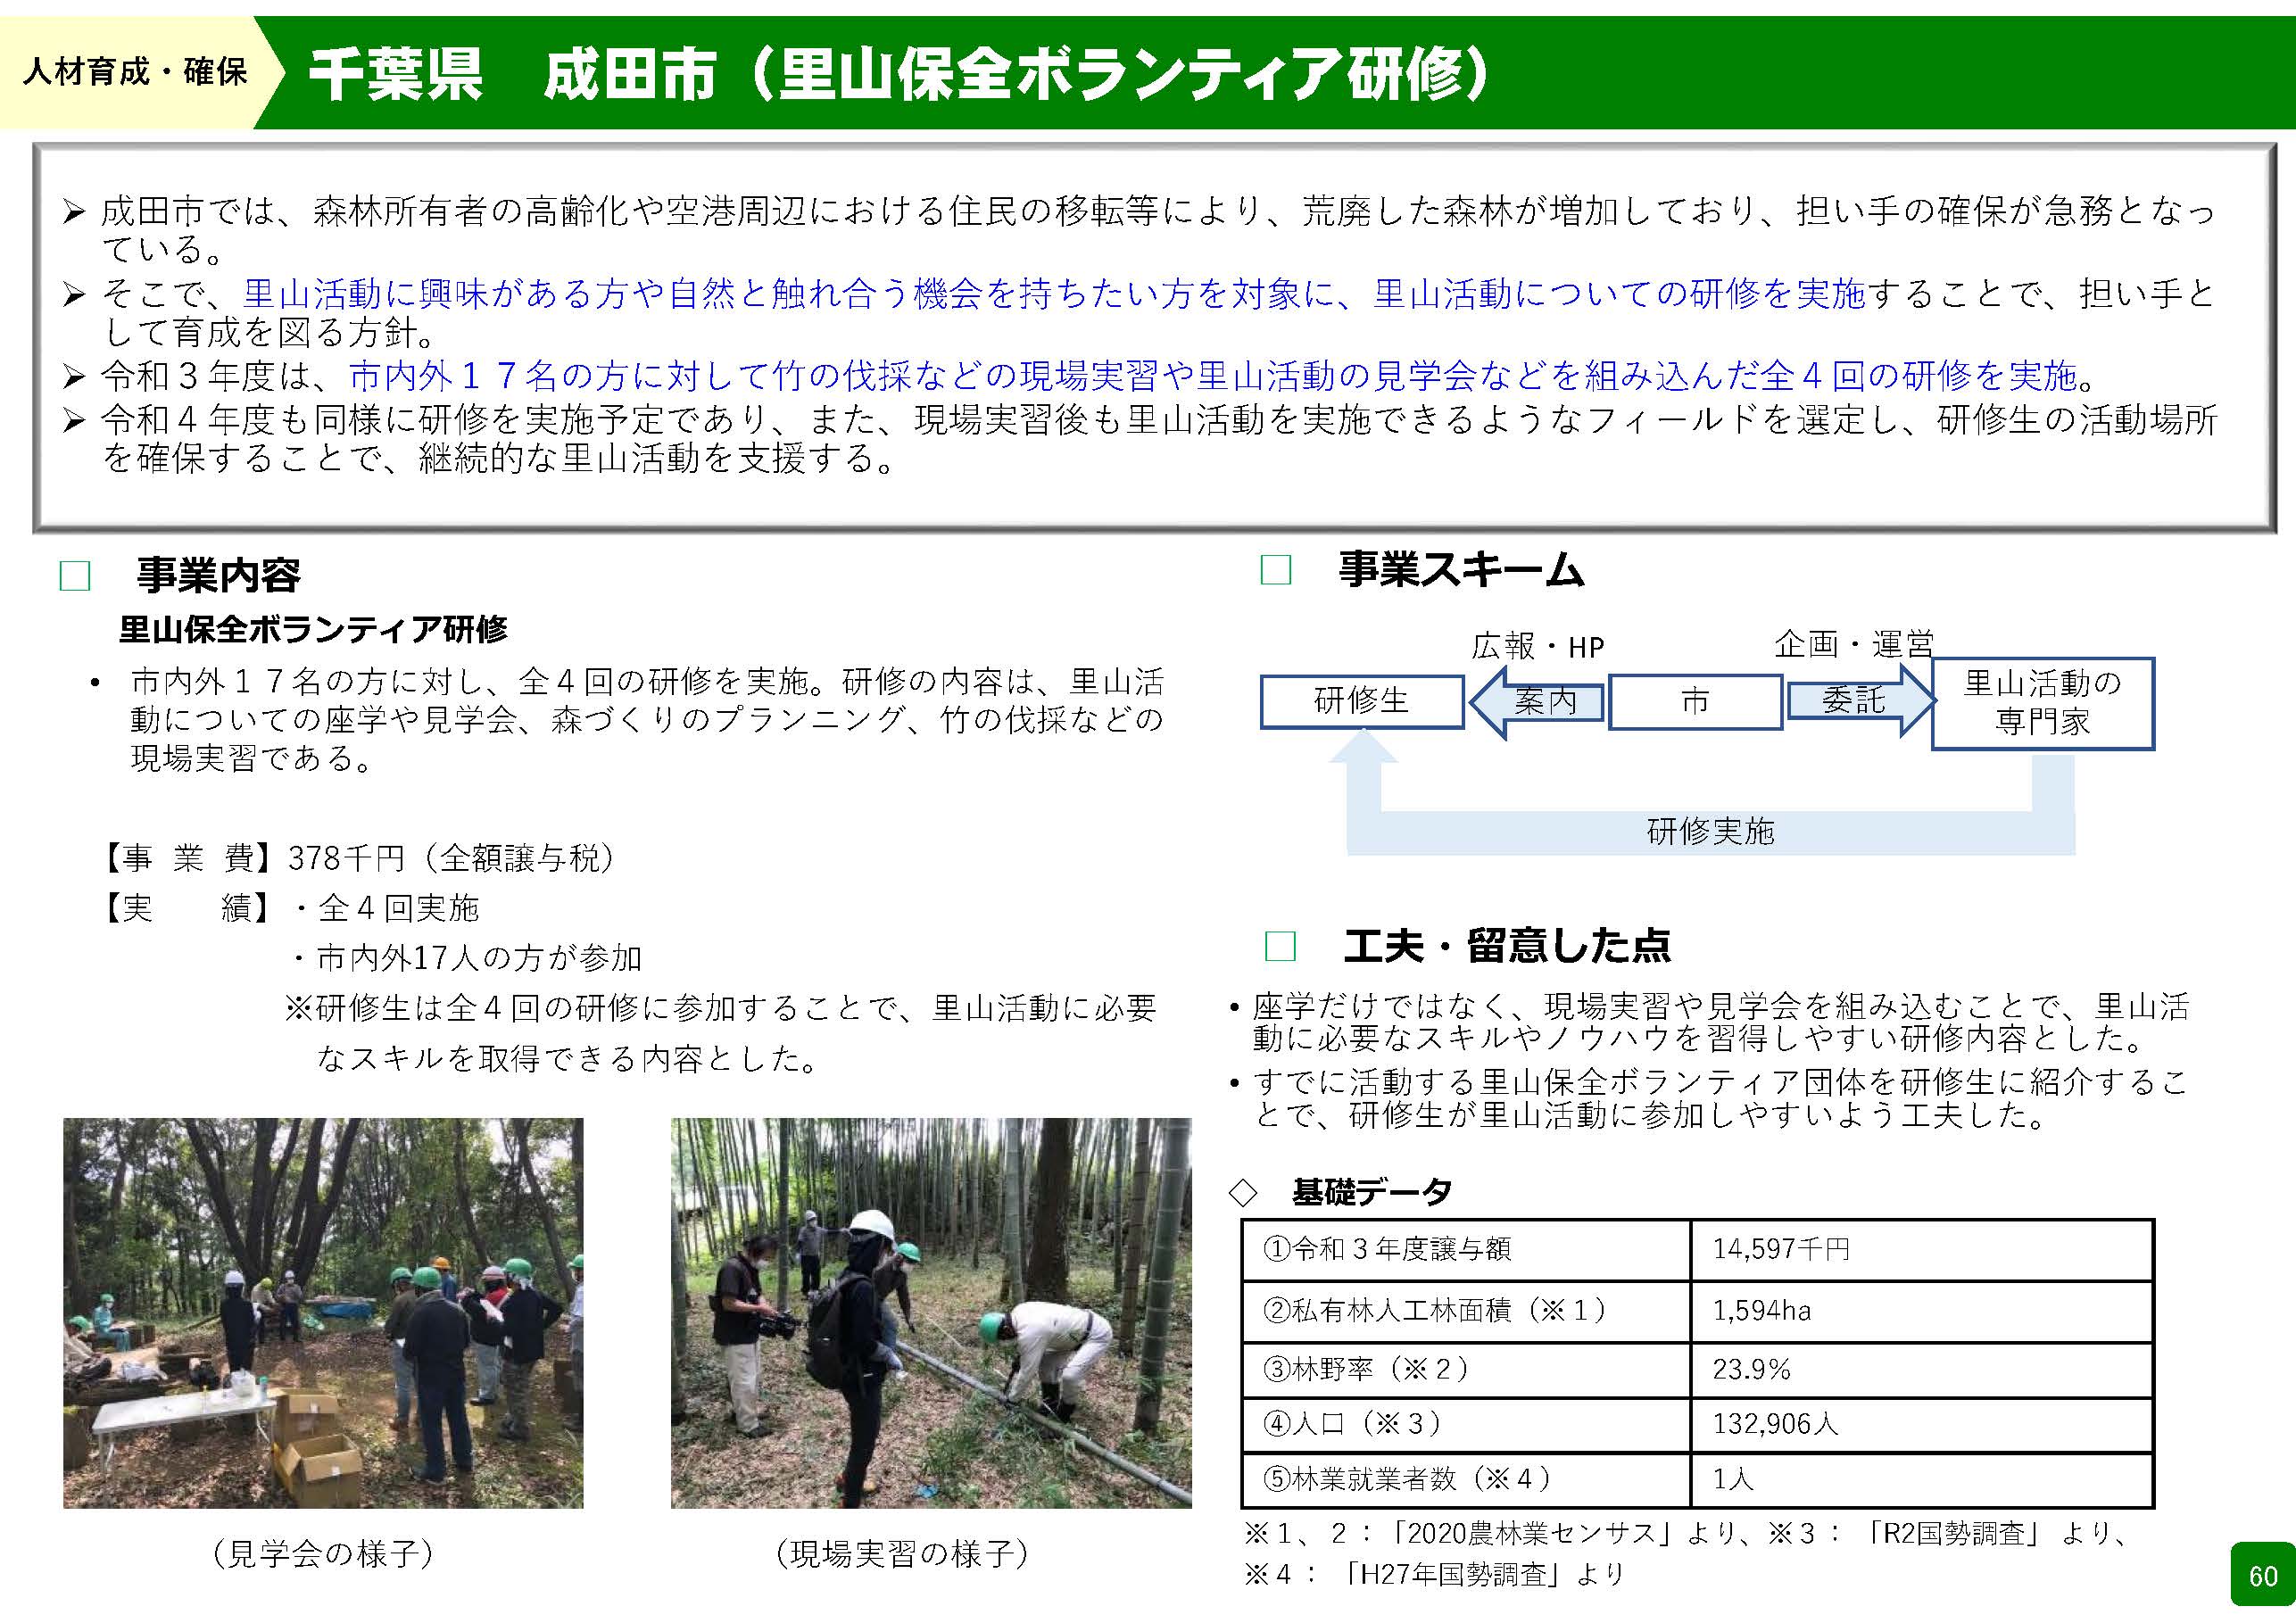 森林環境譲与税を活用した自治体の取組の紹介 Vol.4 千葉県成田市